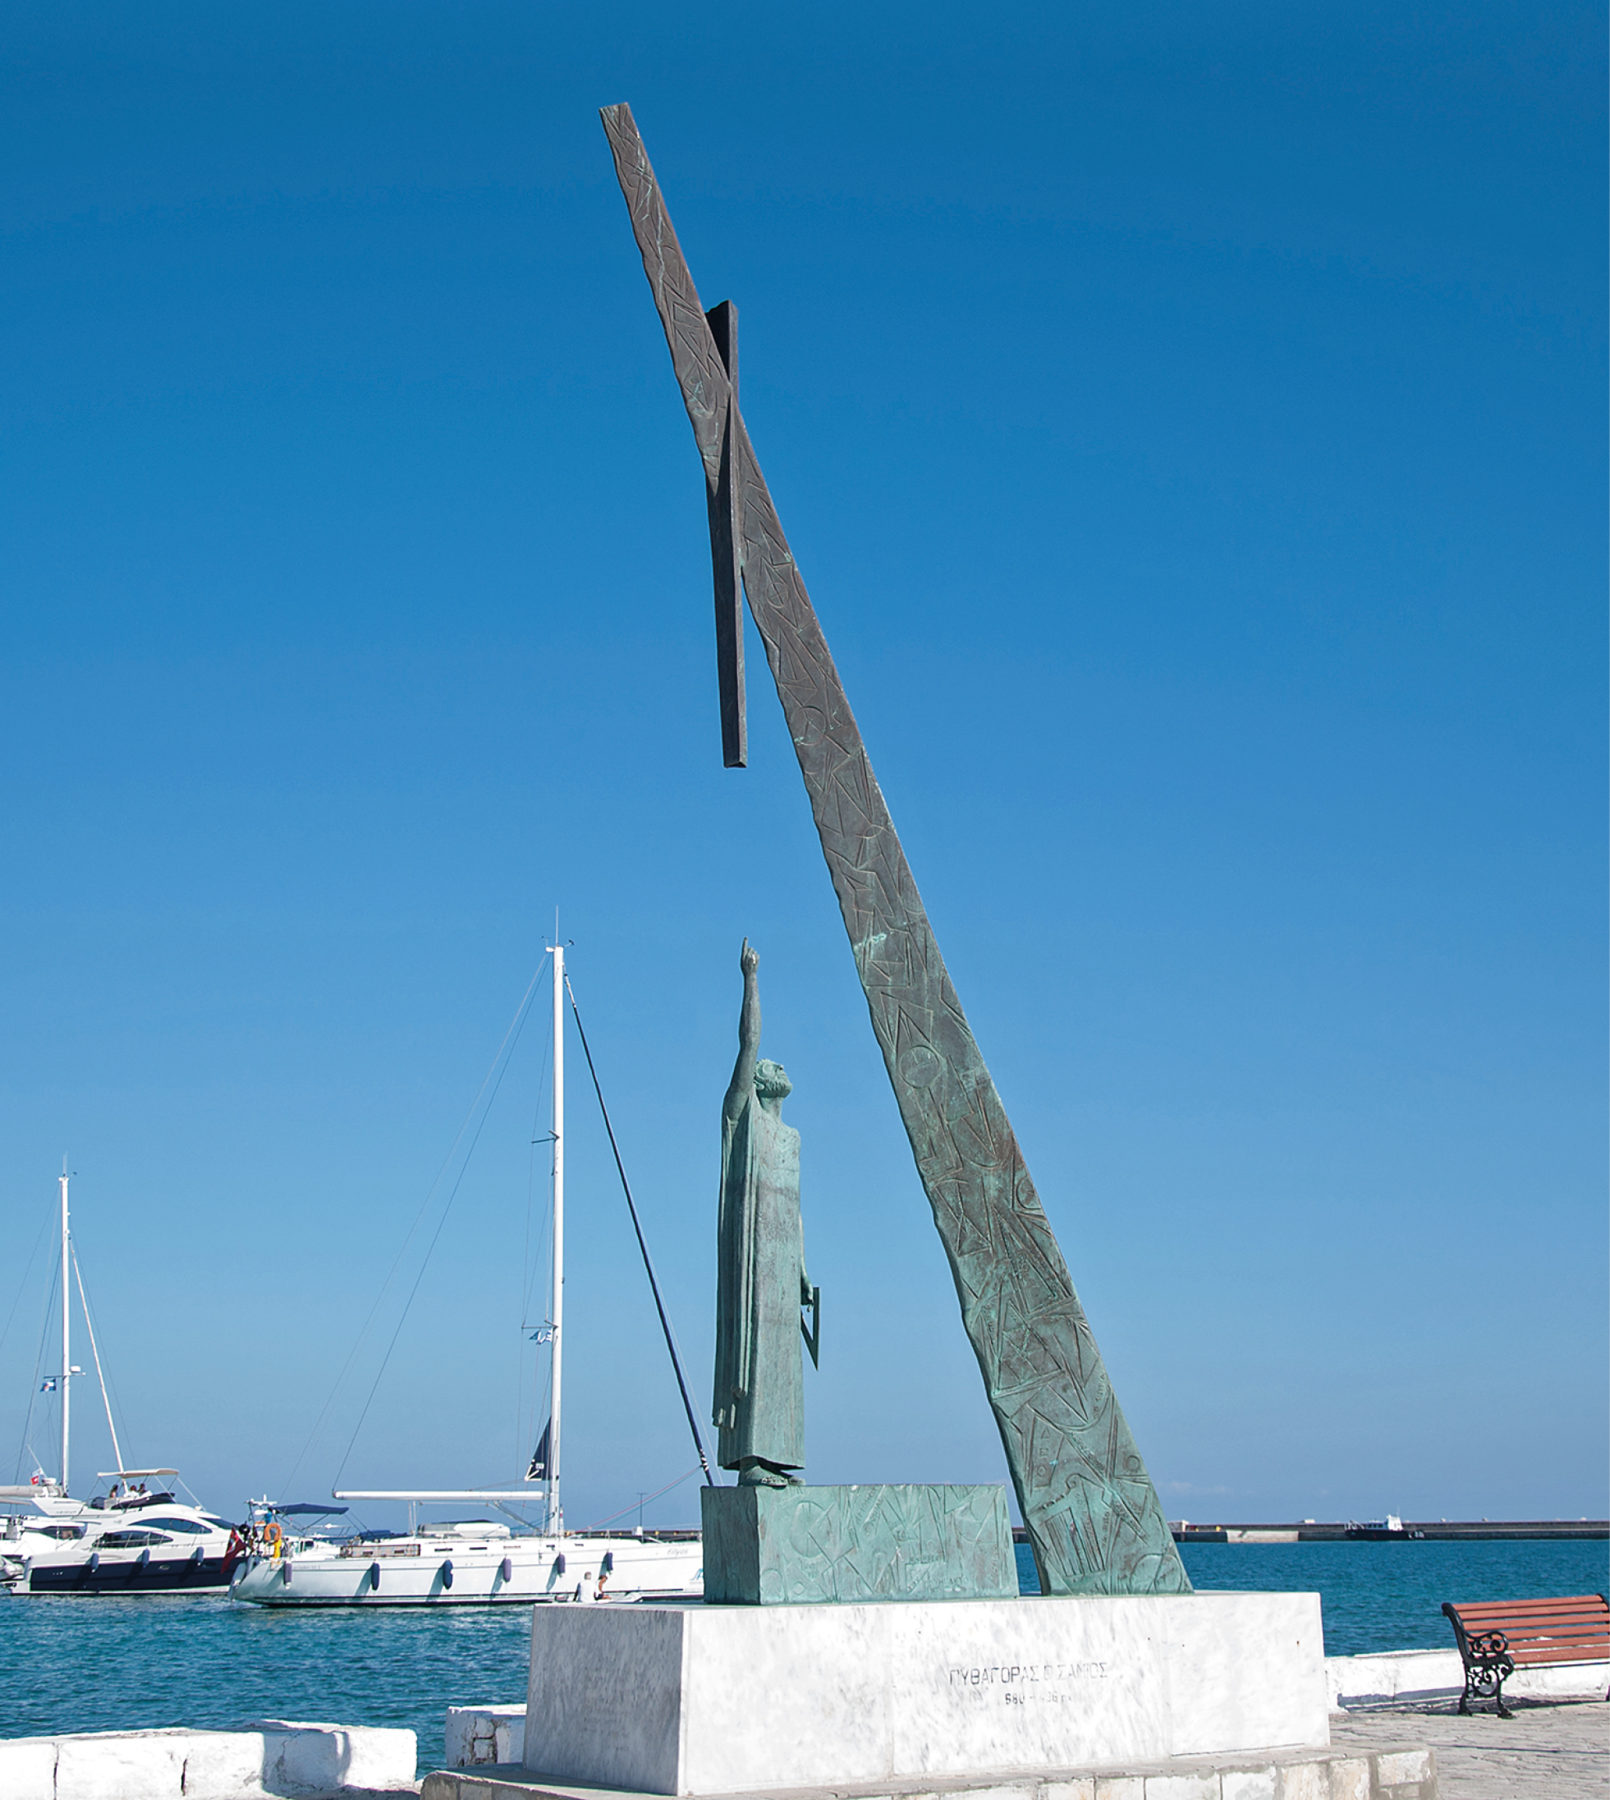 Fotografia. Base com formato de bloco retangular e sobre ela um monumento de bronze de uma pessoa em pé com um dos braços para cima onde há uma haste presa a outra haste na diagonal. Ao fundo, barcos no mar.